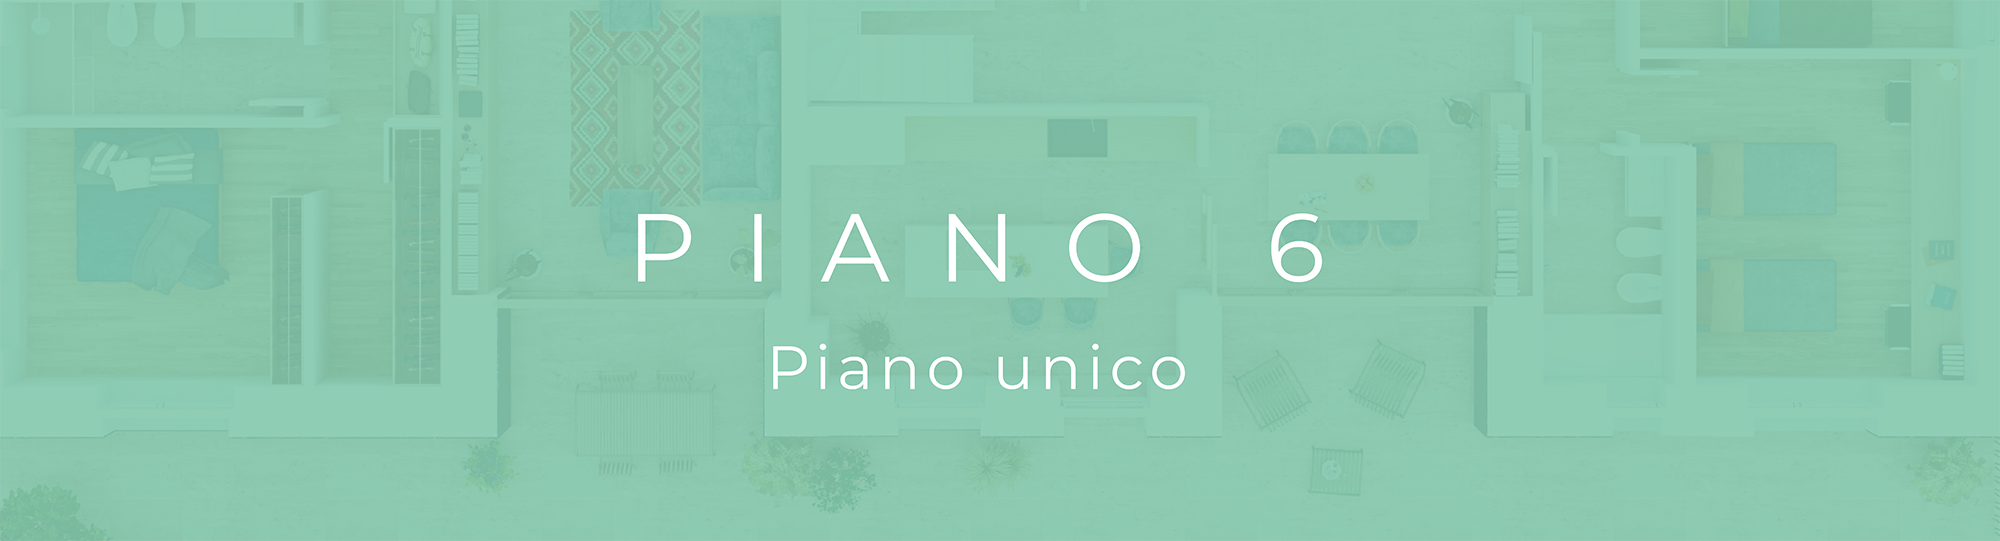 01_MENU_6_piano unico